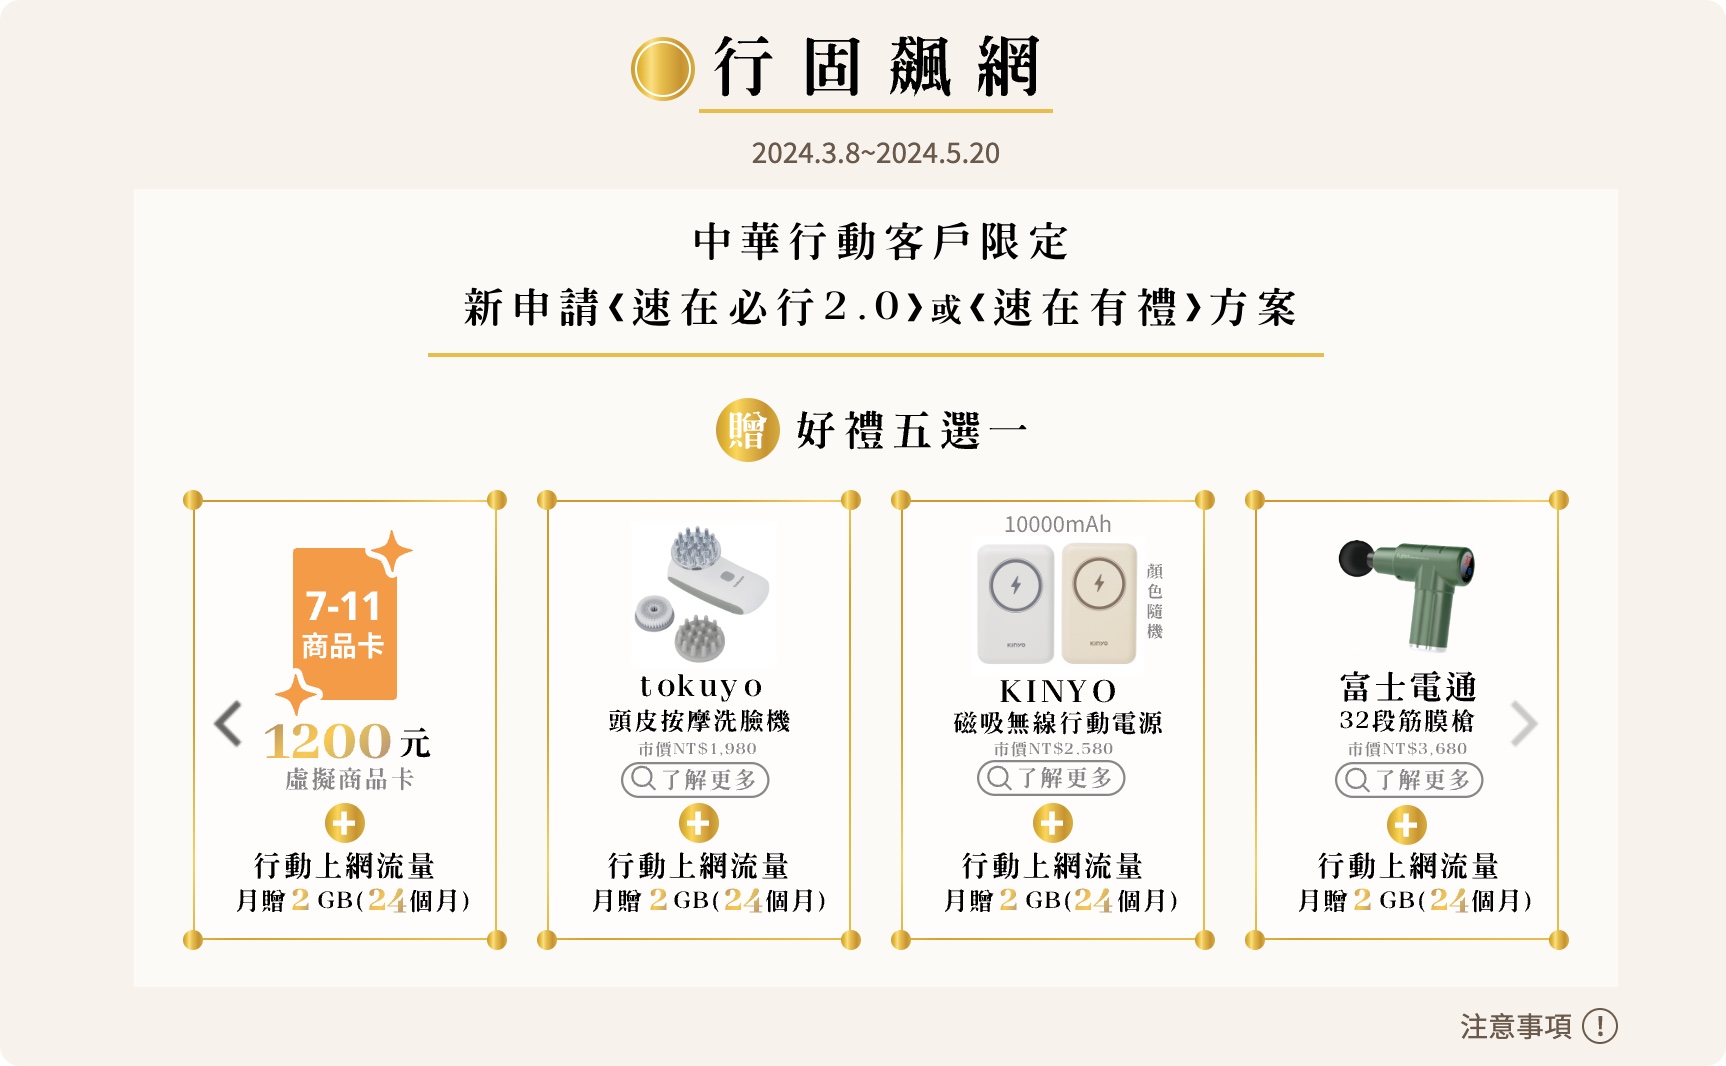 中華電信 光世代 速在必行 2.0 限時優惠加碼